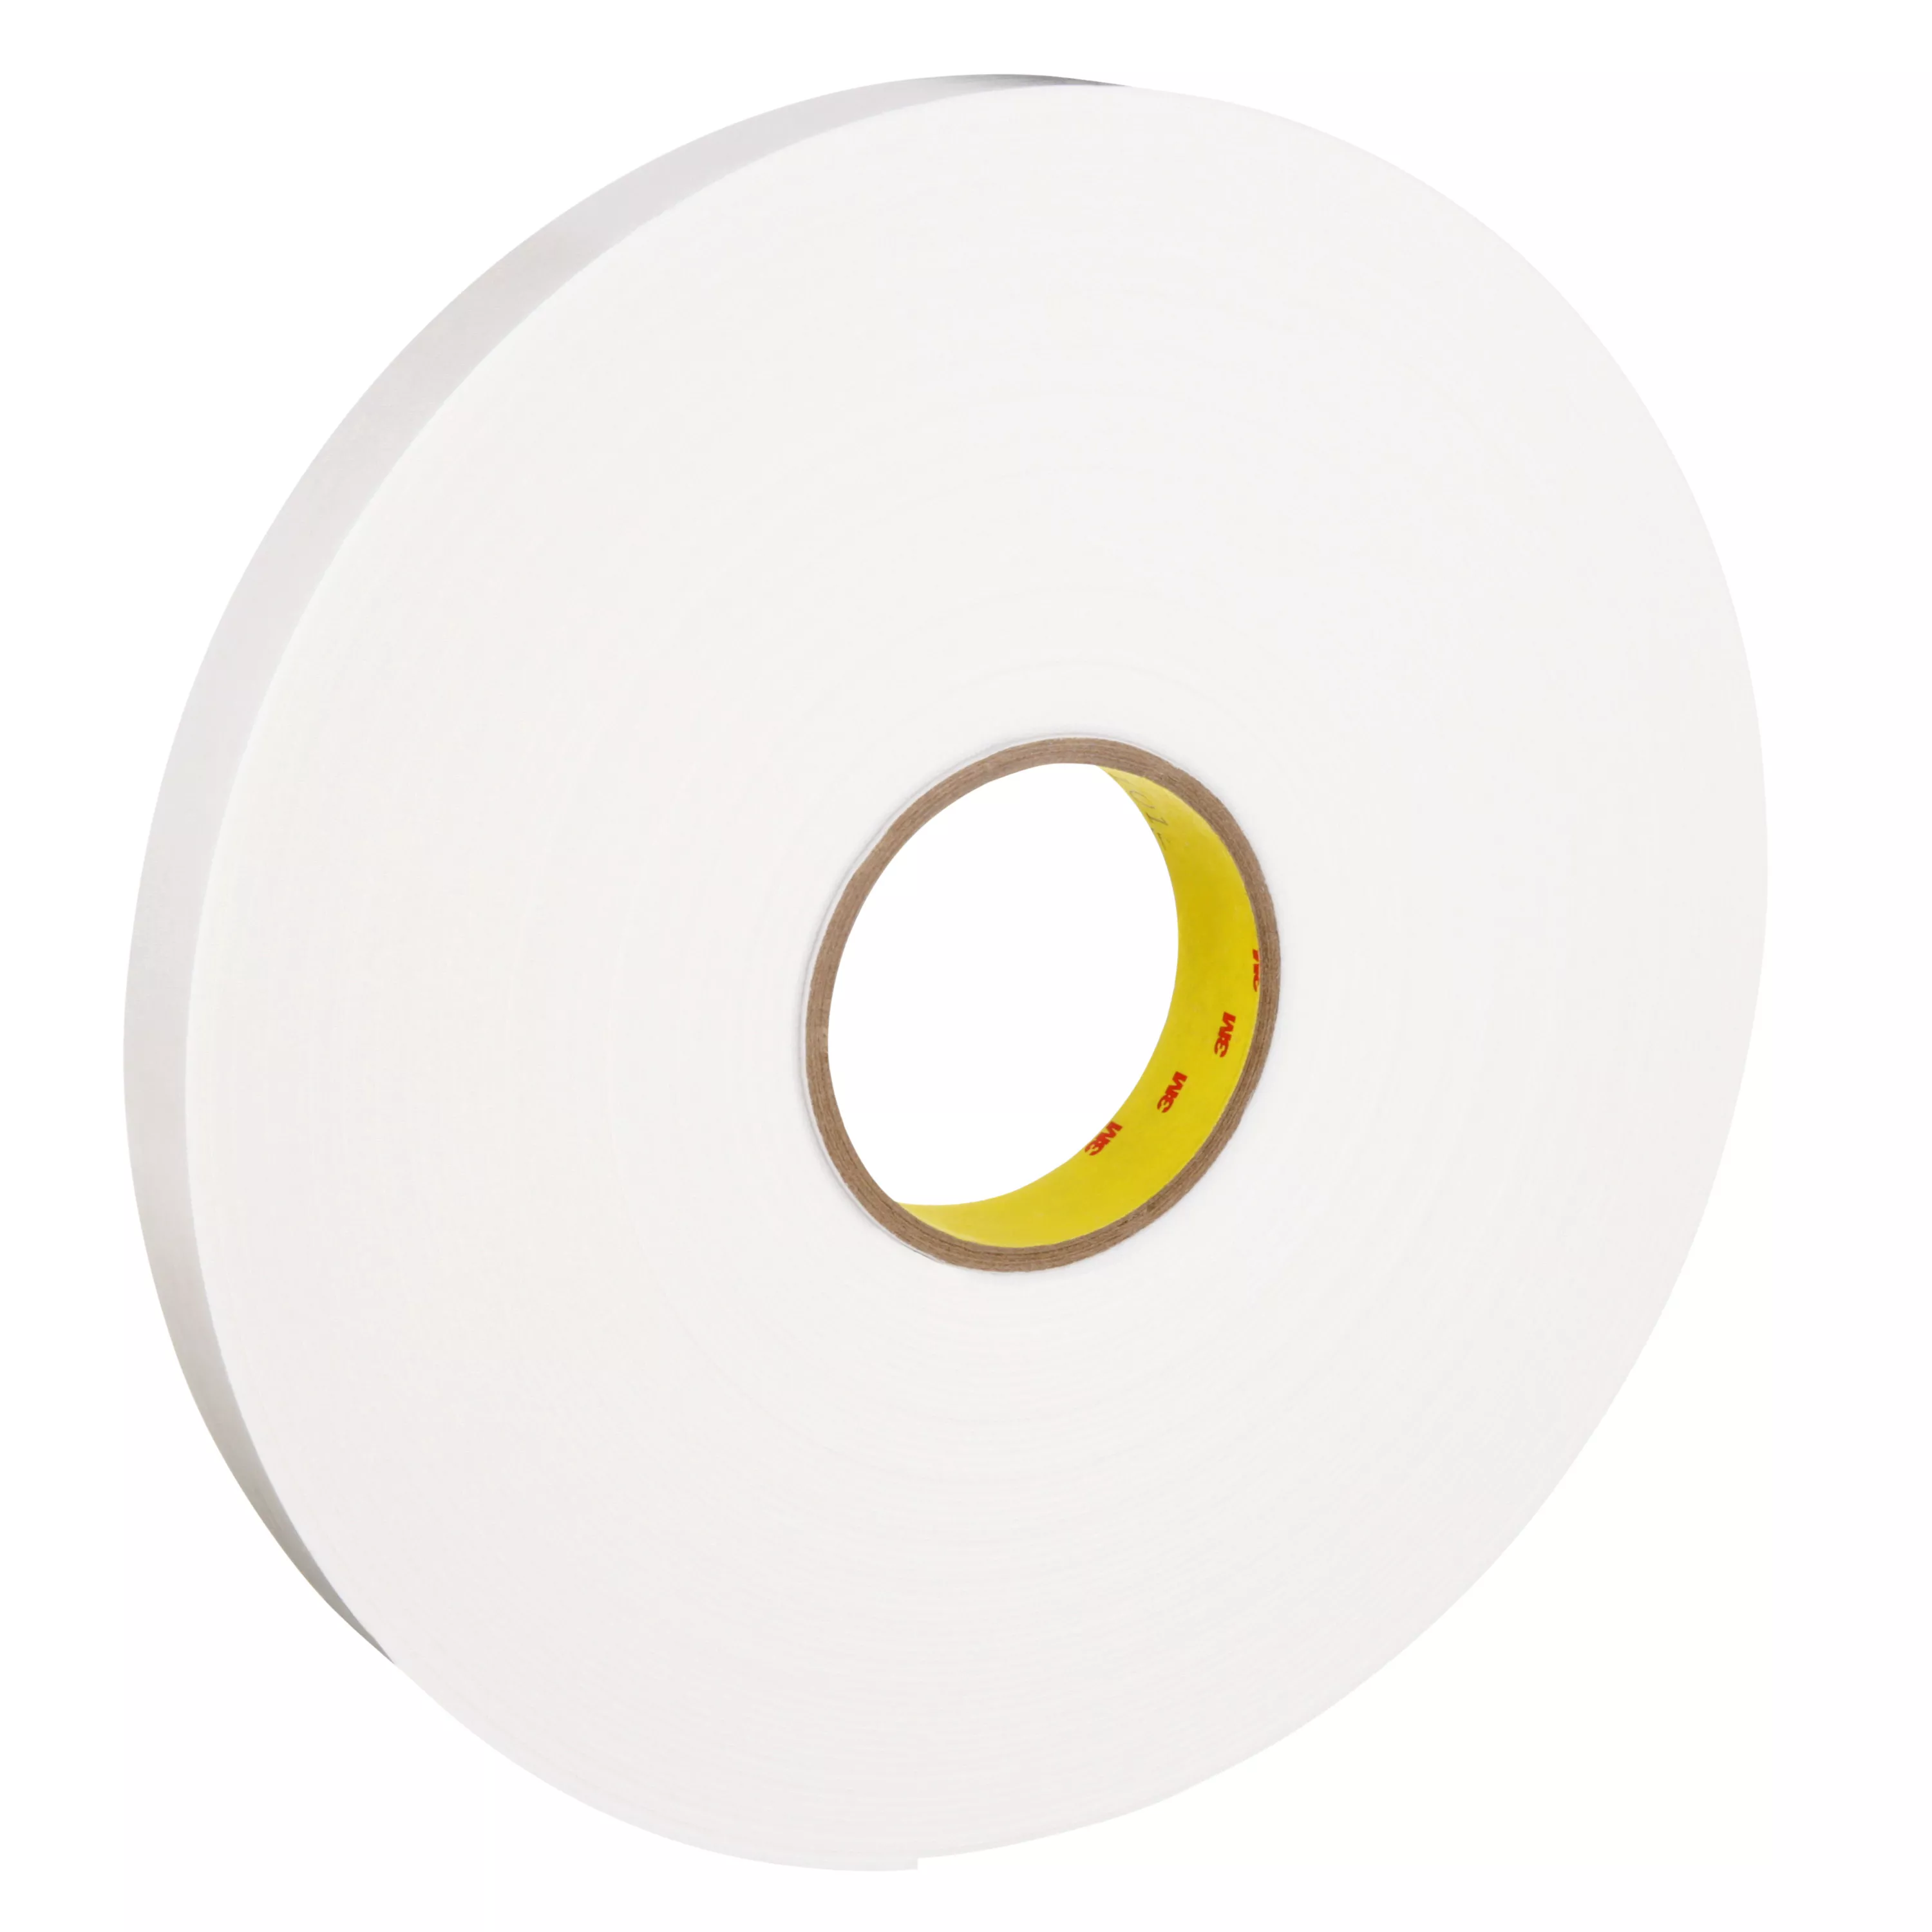 3M™ Double Coated Polyethylene Foam Tape 4466, White, 1 in x 36 yd, 62
mil, 9 Roll/Case